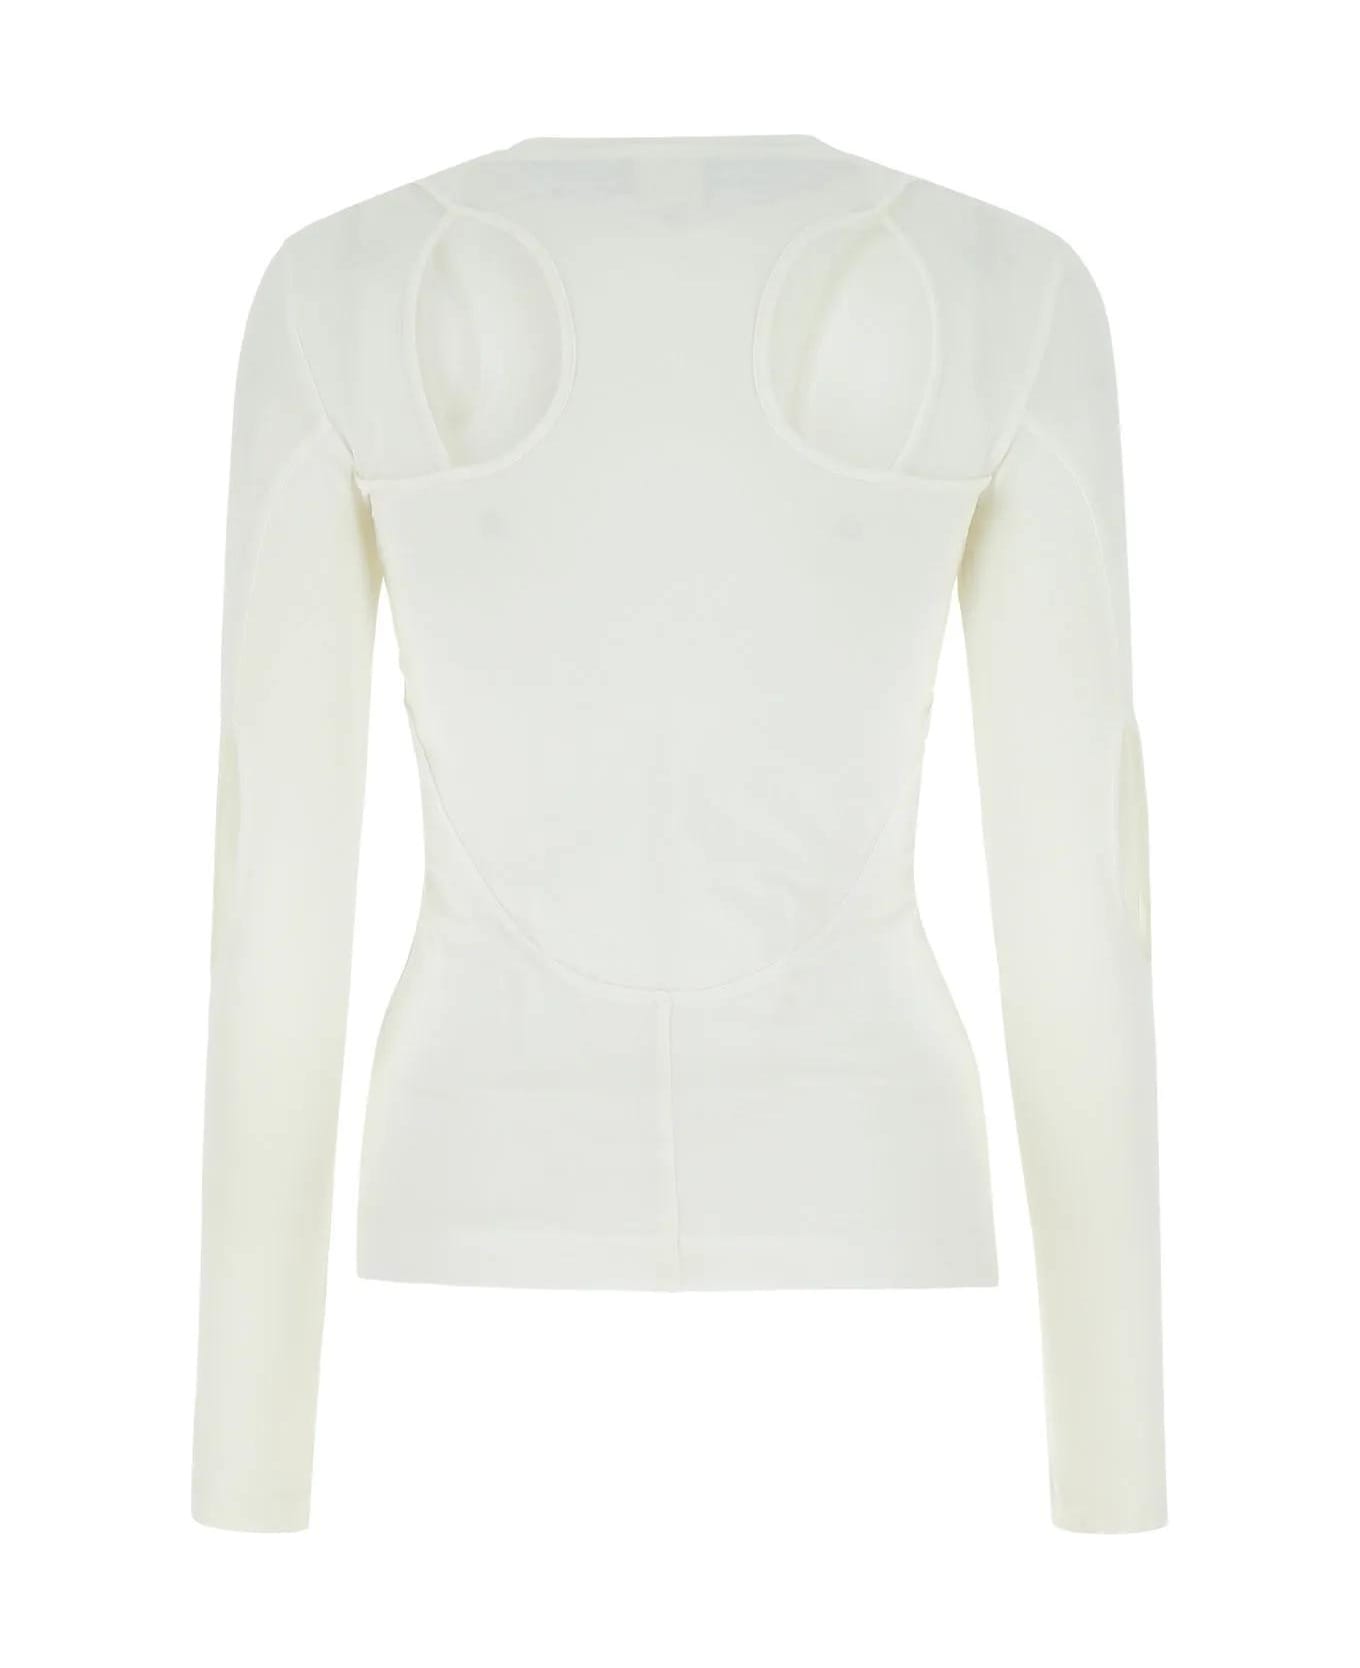 Givenchy White Stretch Nylon Top - White